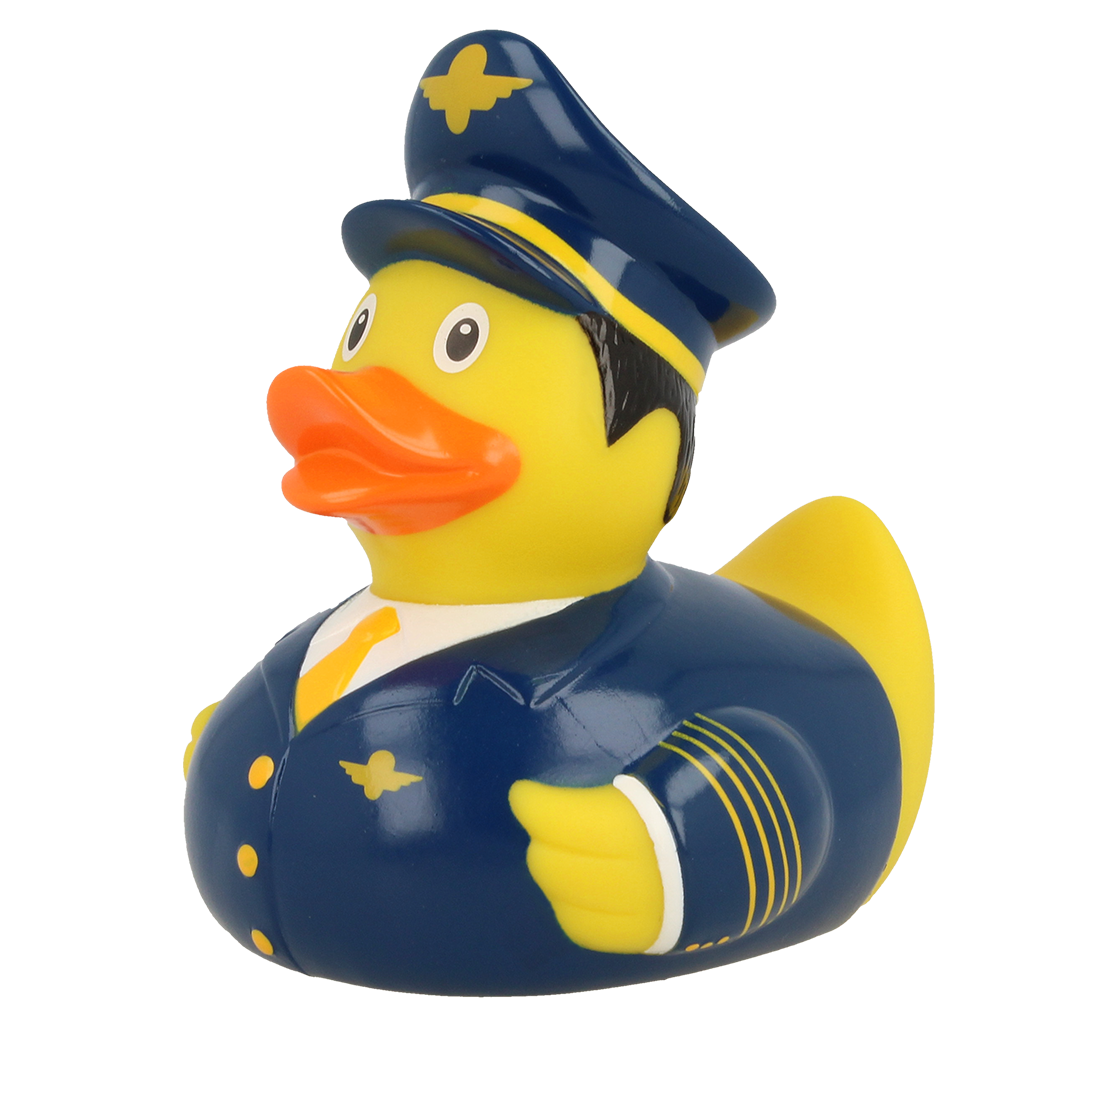 Linea pilota Duck.